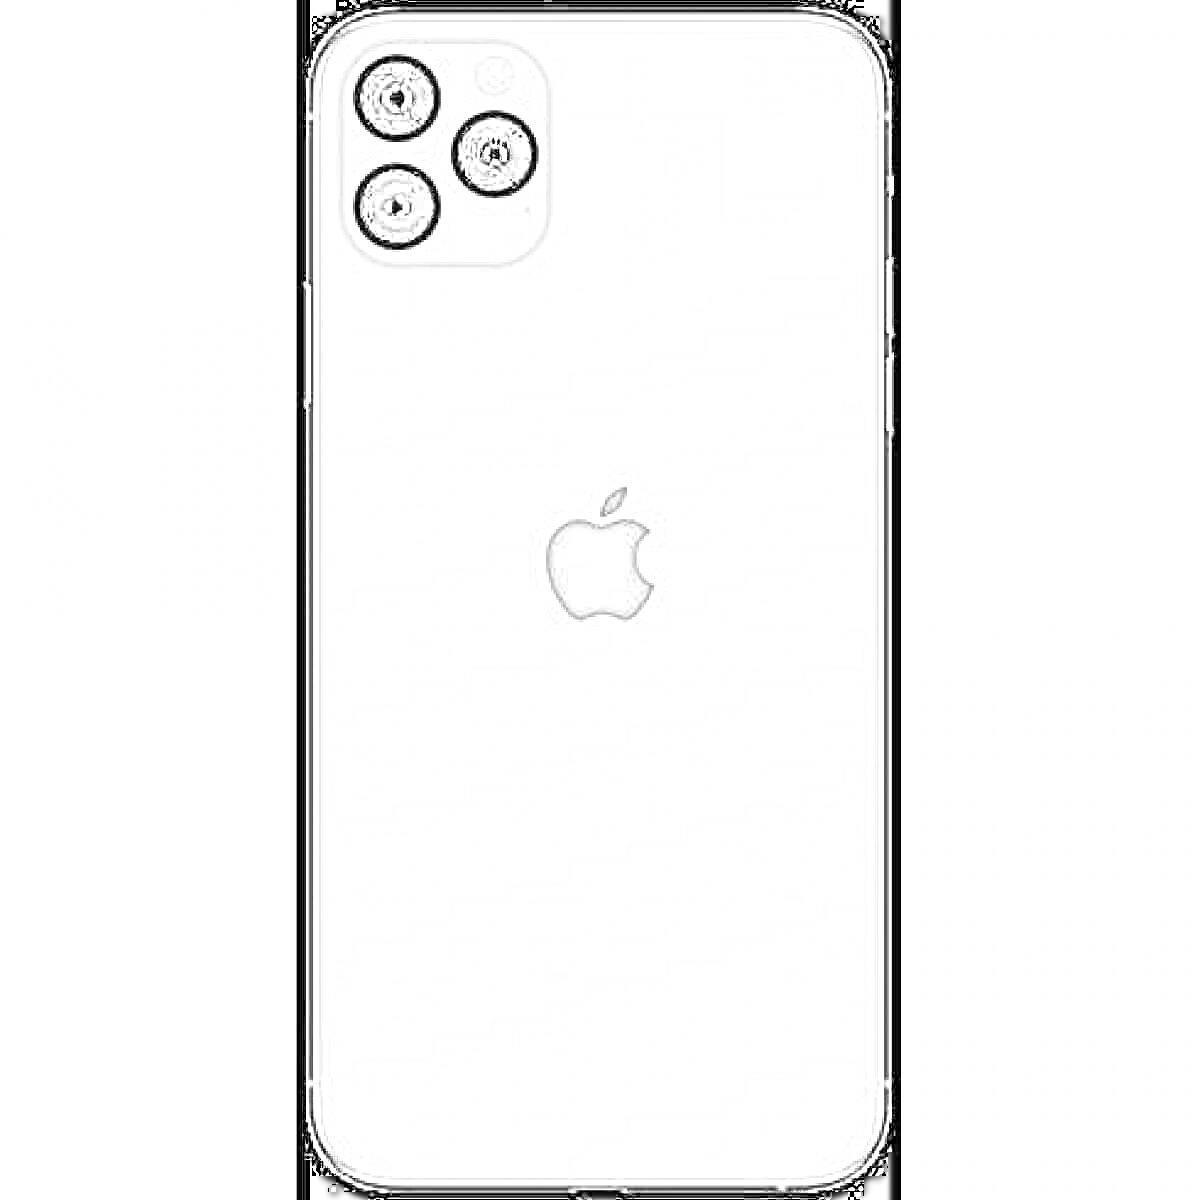 Раскраска Задняя панель 13-й модели айфона, логотип в центре, три камеры и вспышка в левом верхнем углу